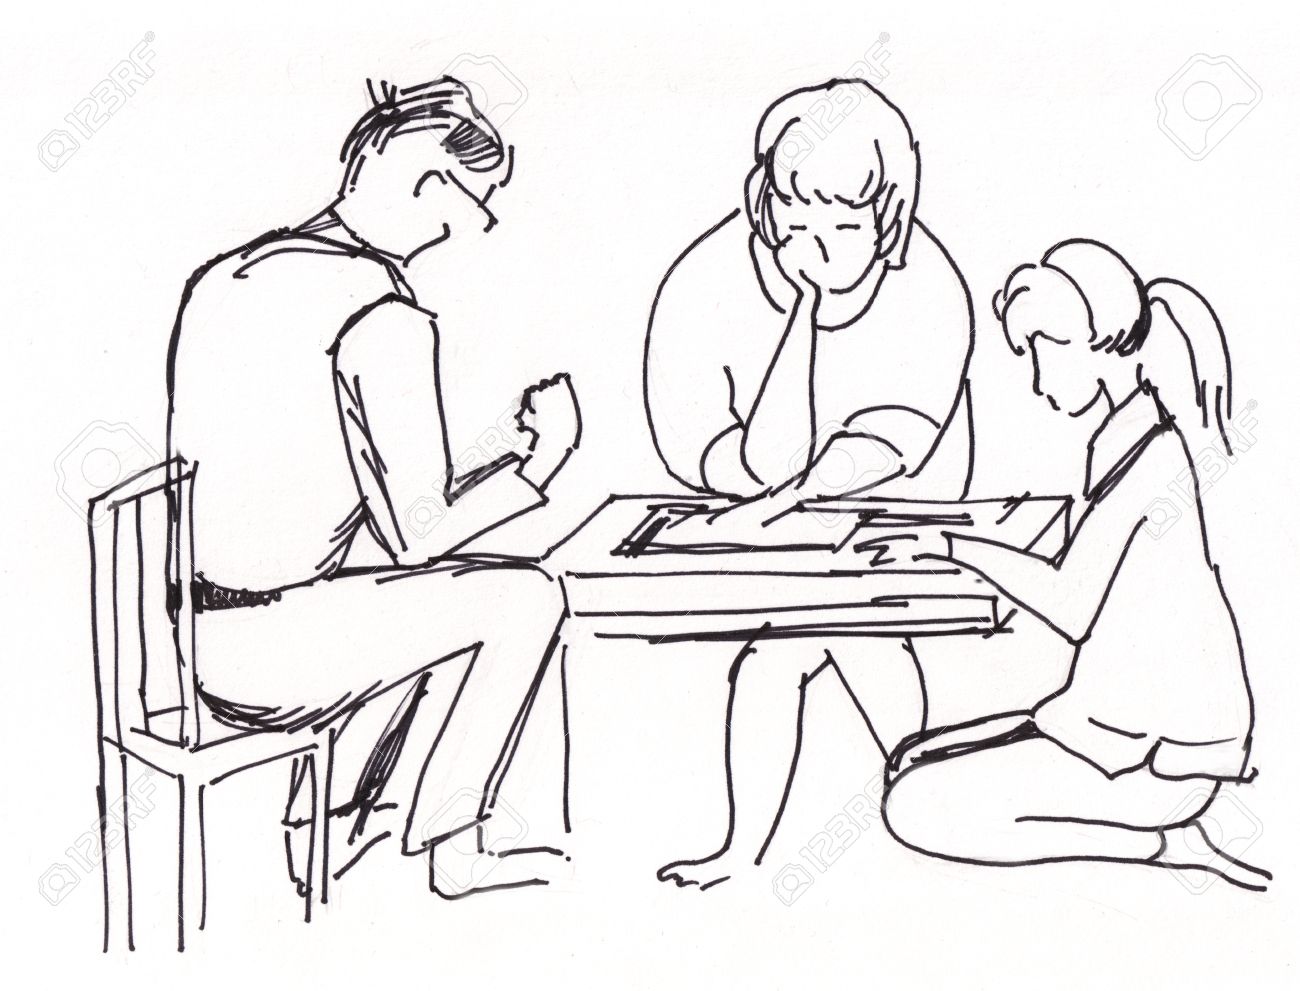 drawingboard game drawit